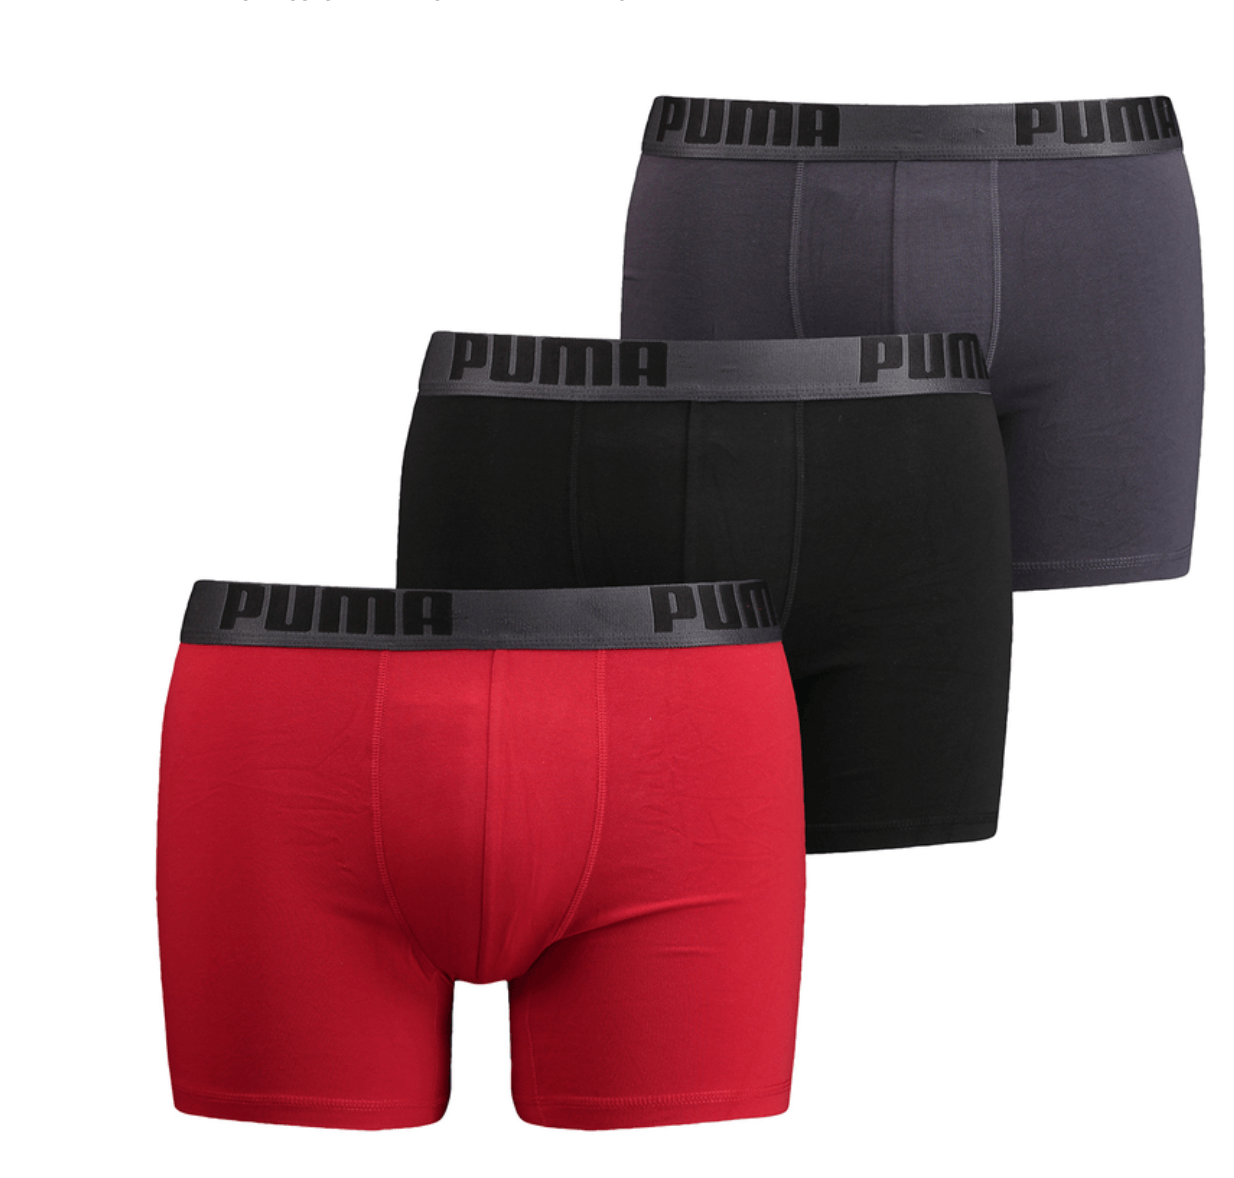 PUMA Men's 3 Pack Cotton Stretch Boxer Brief Underwear - Red/Black/Grey